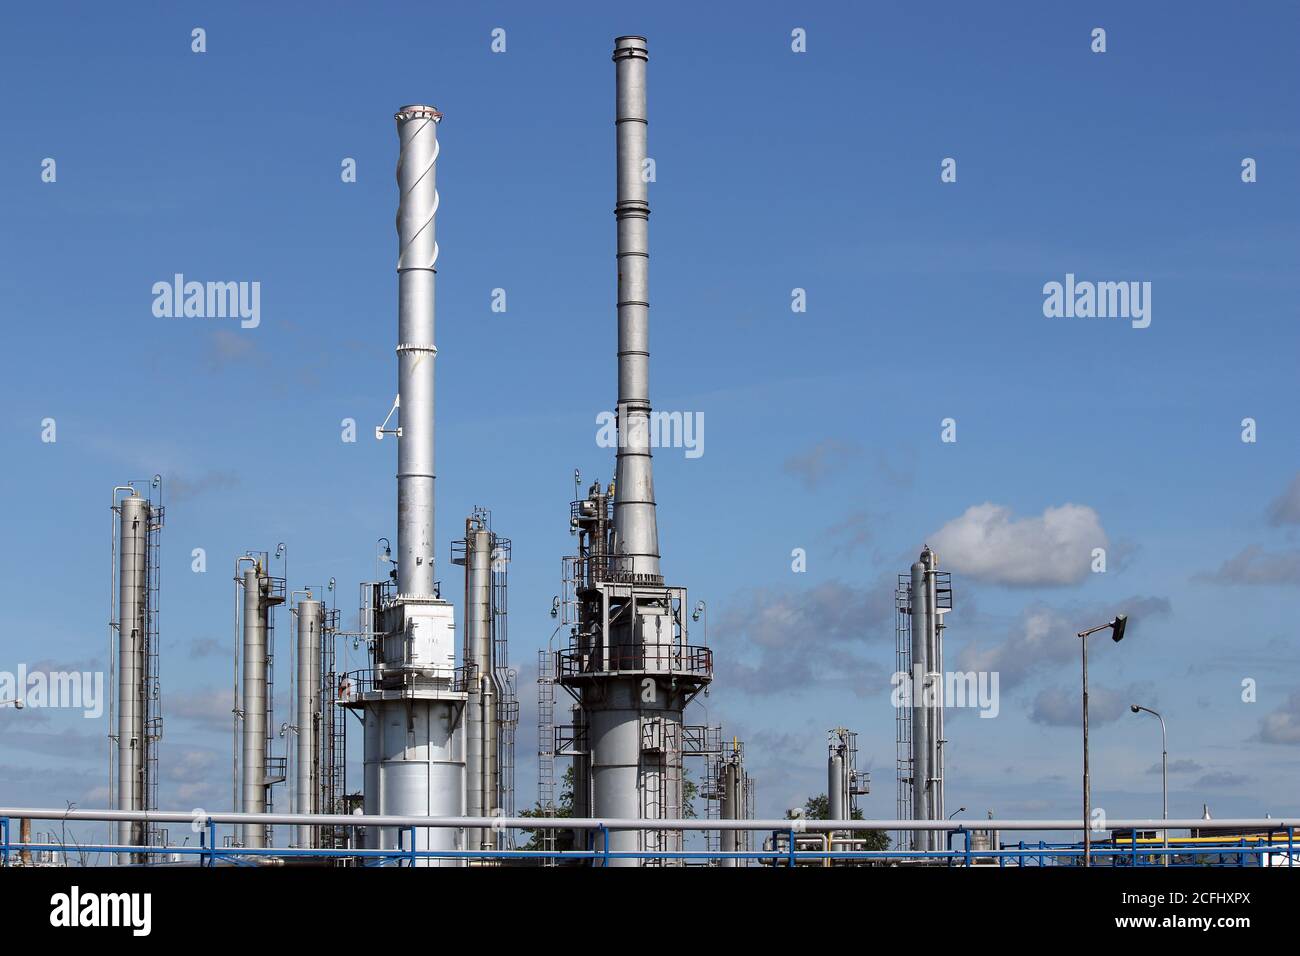 raffinerie de pétrole usine pétrochimique industrie lourde Banque D'Images